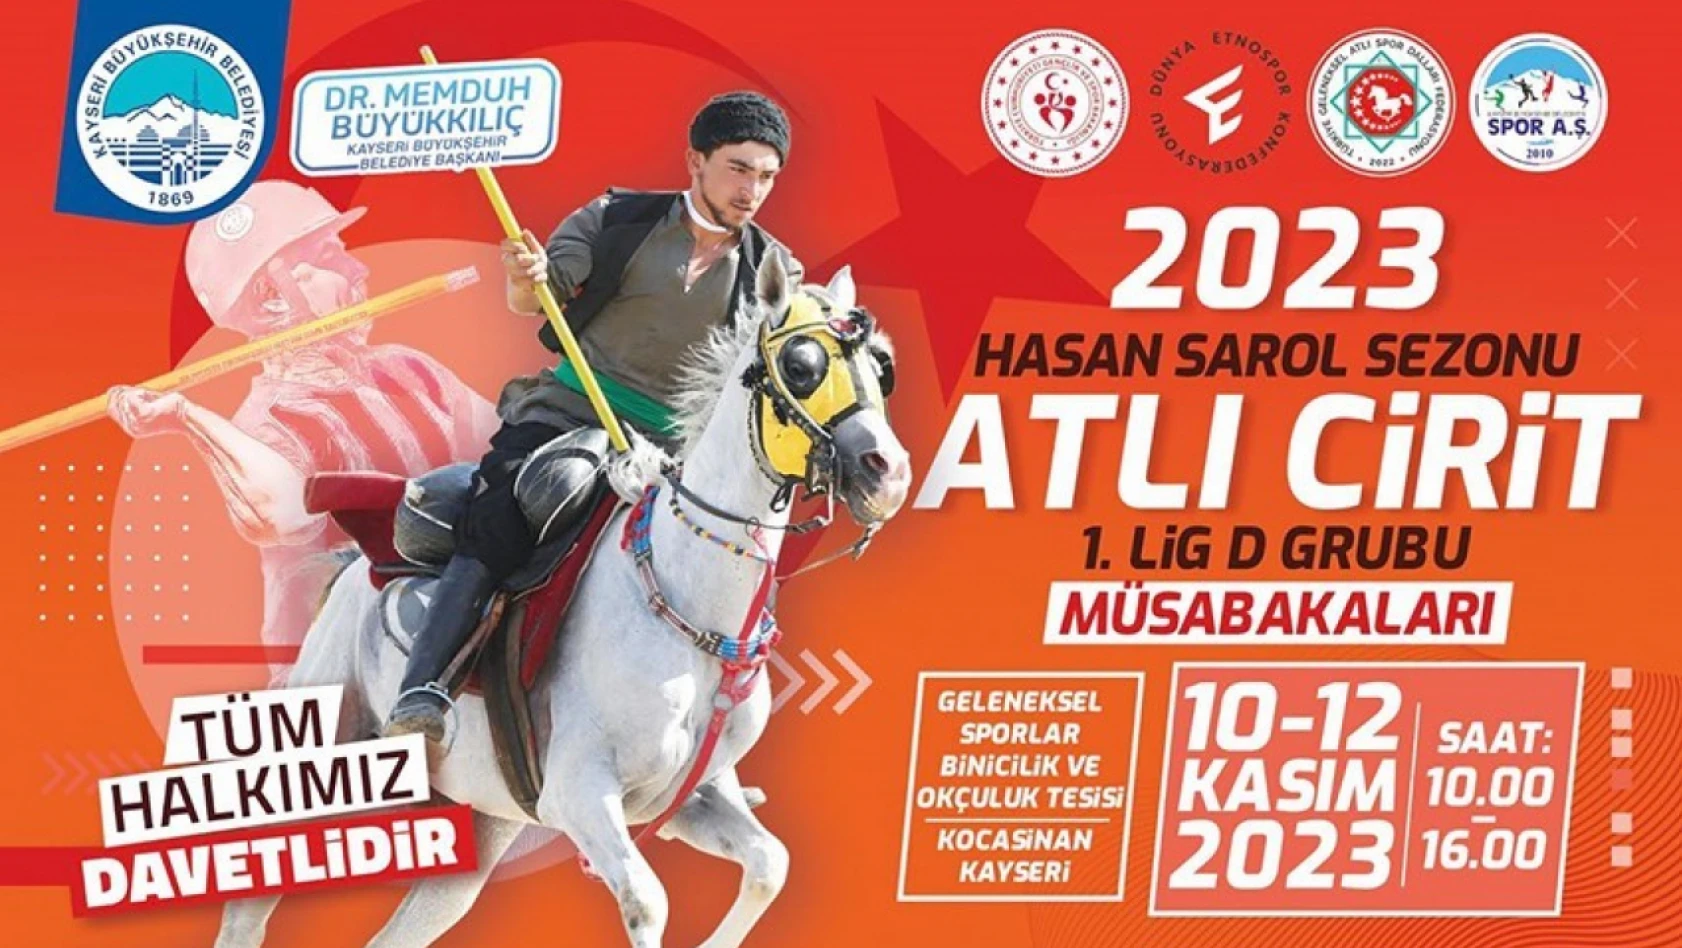 Atlı cirit müsabakaları Kayseri'de yapılacak